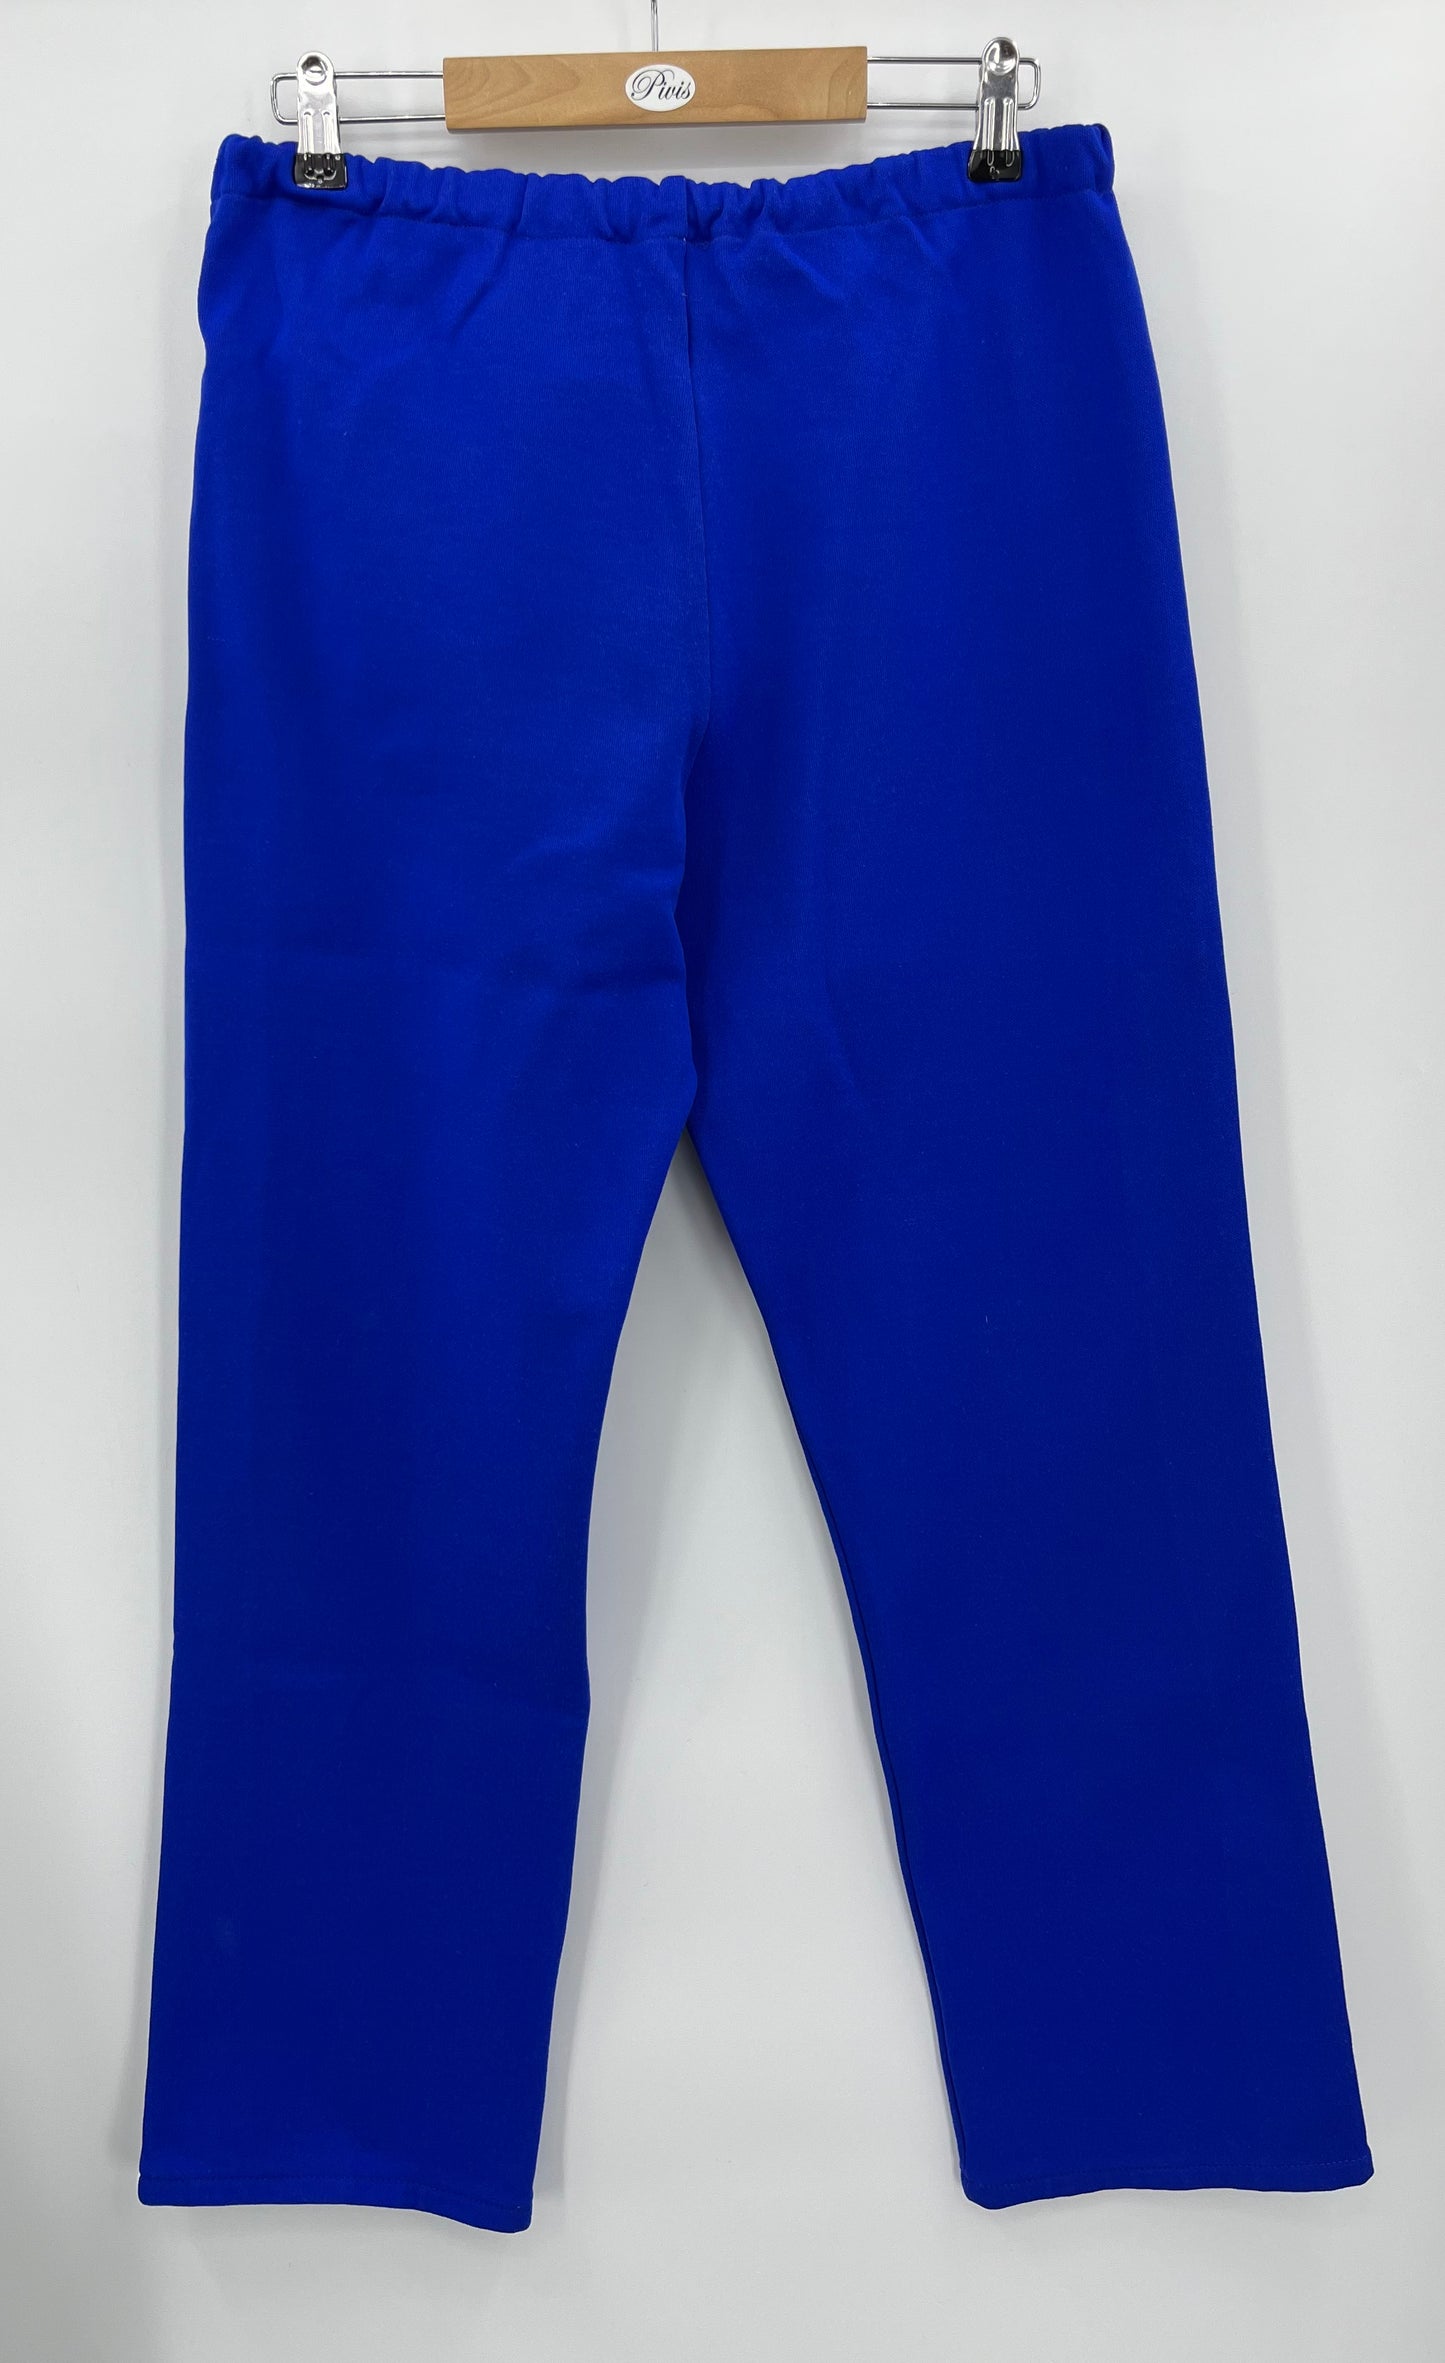 Siniset verkkahousut, 70-luku, vyöt.ymp. 76-92cm, kokoarvio naisten 40-42, miesten S-M